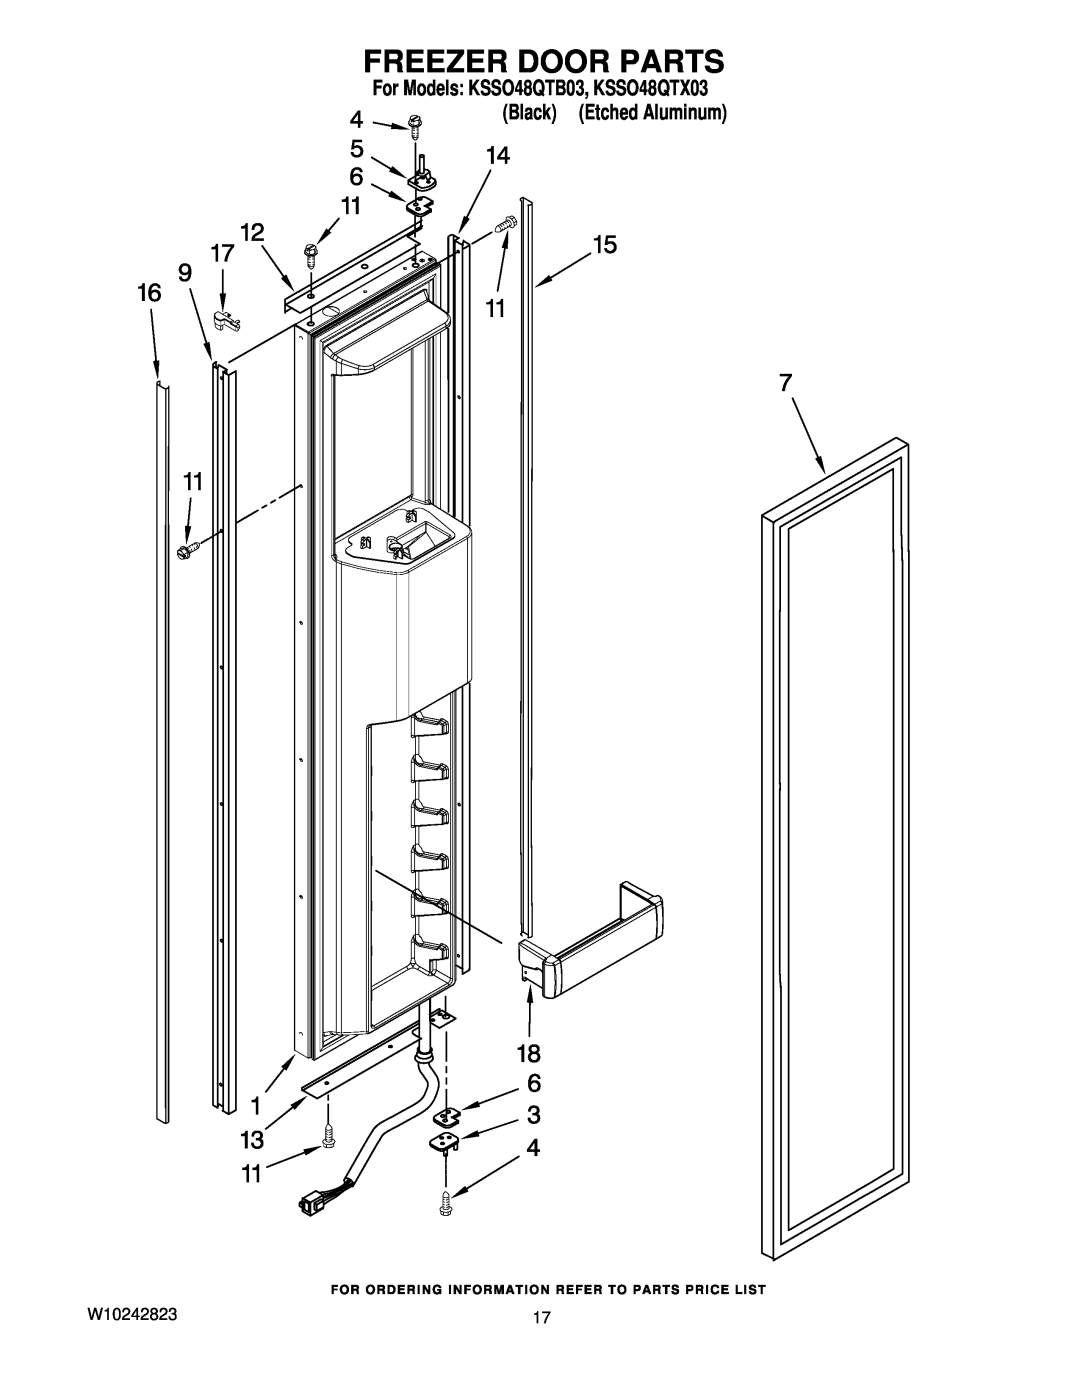 KitchenAid manual Freezer Door Parts, For Models KSSO48QTB03, KSSO48QTX03 Black Etched Aluminum 